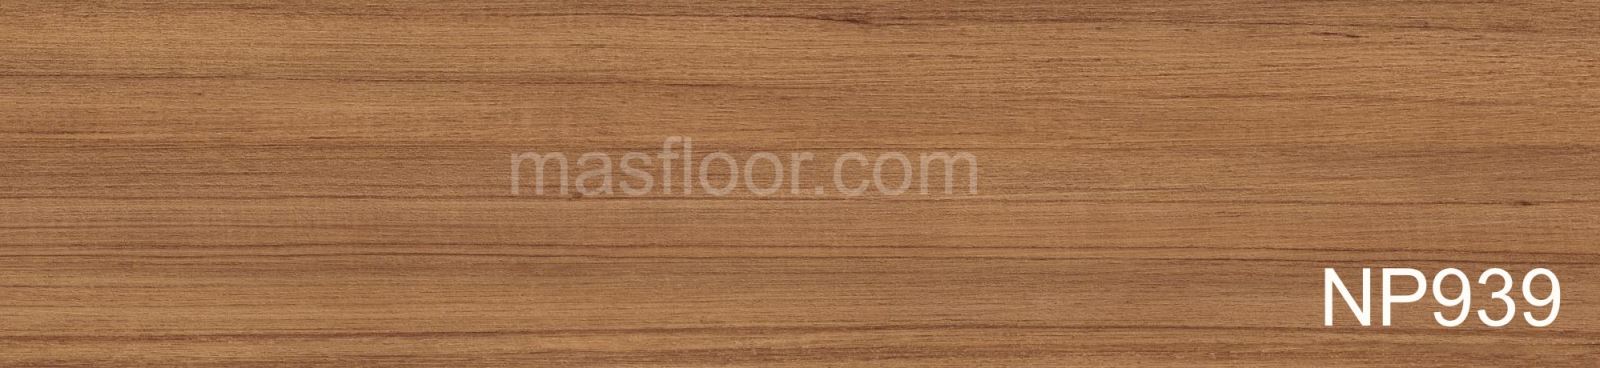 NP939 là sàn gỗ nhập khẩu malaysia